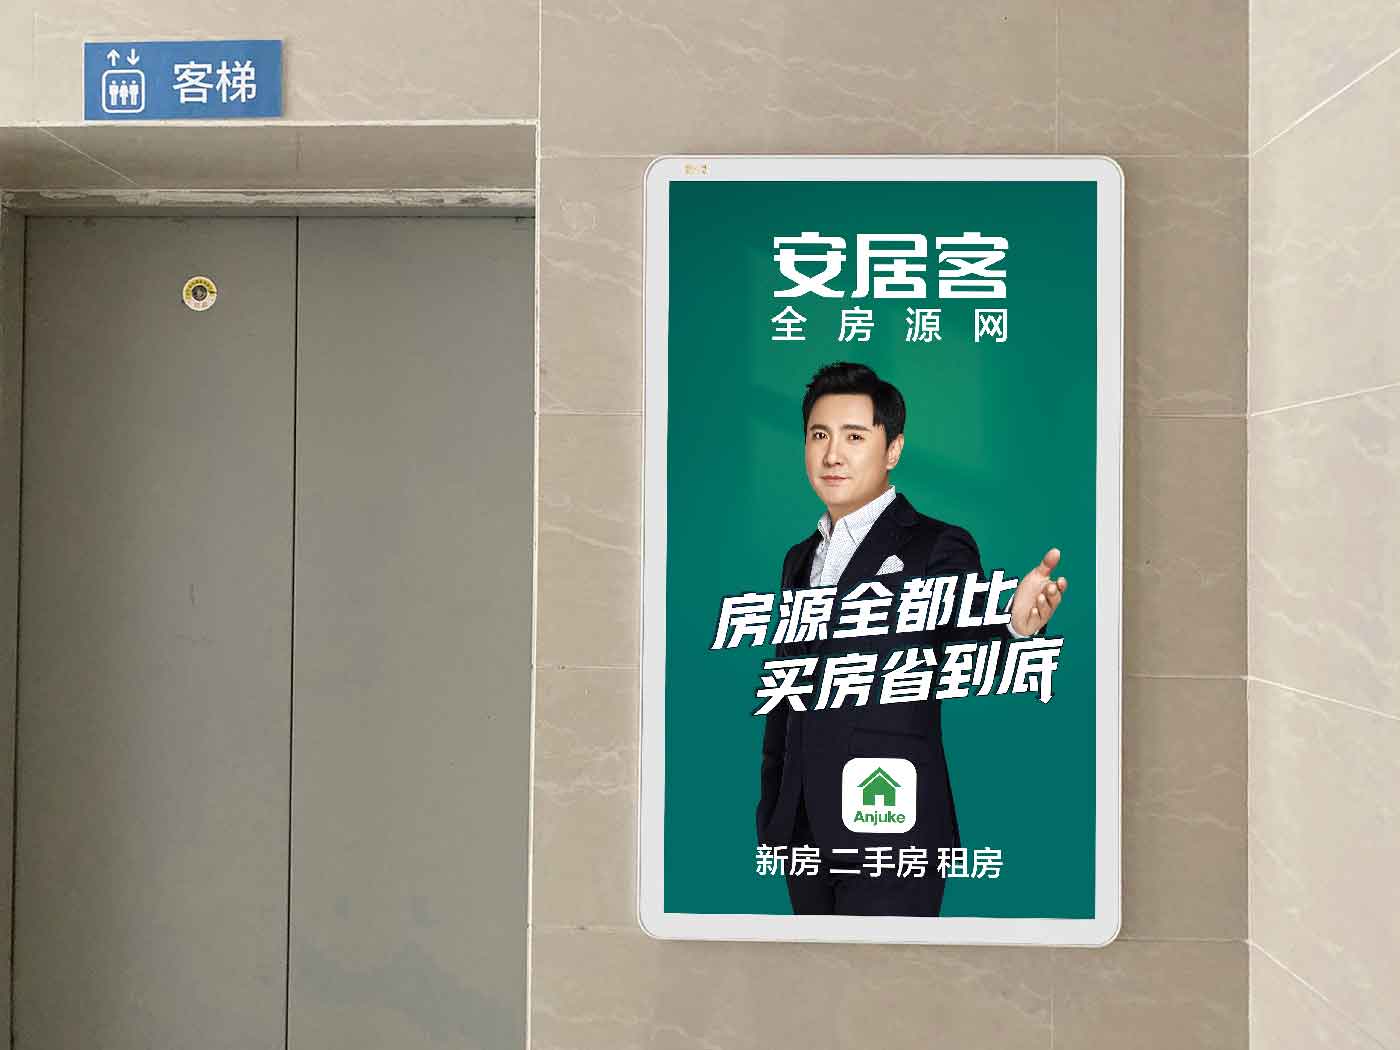 上海电梯广告图片 电梯广告投放公司投放